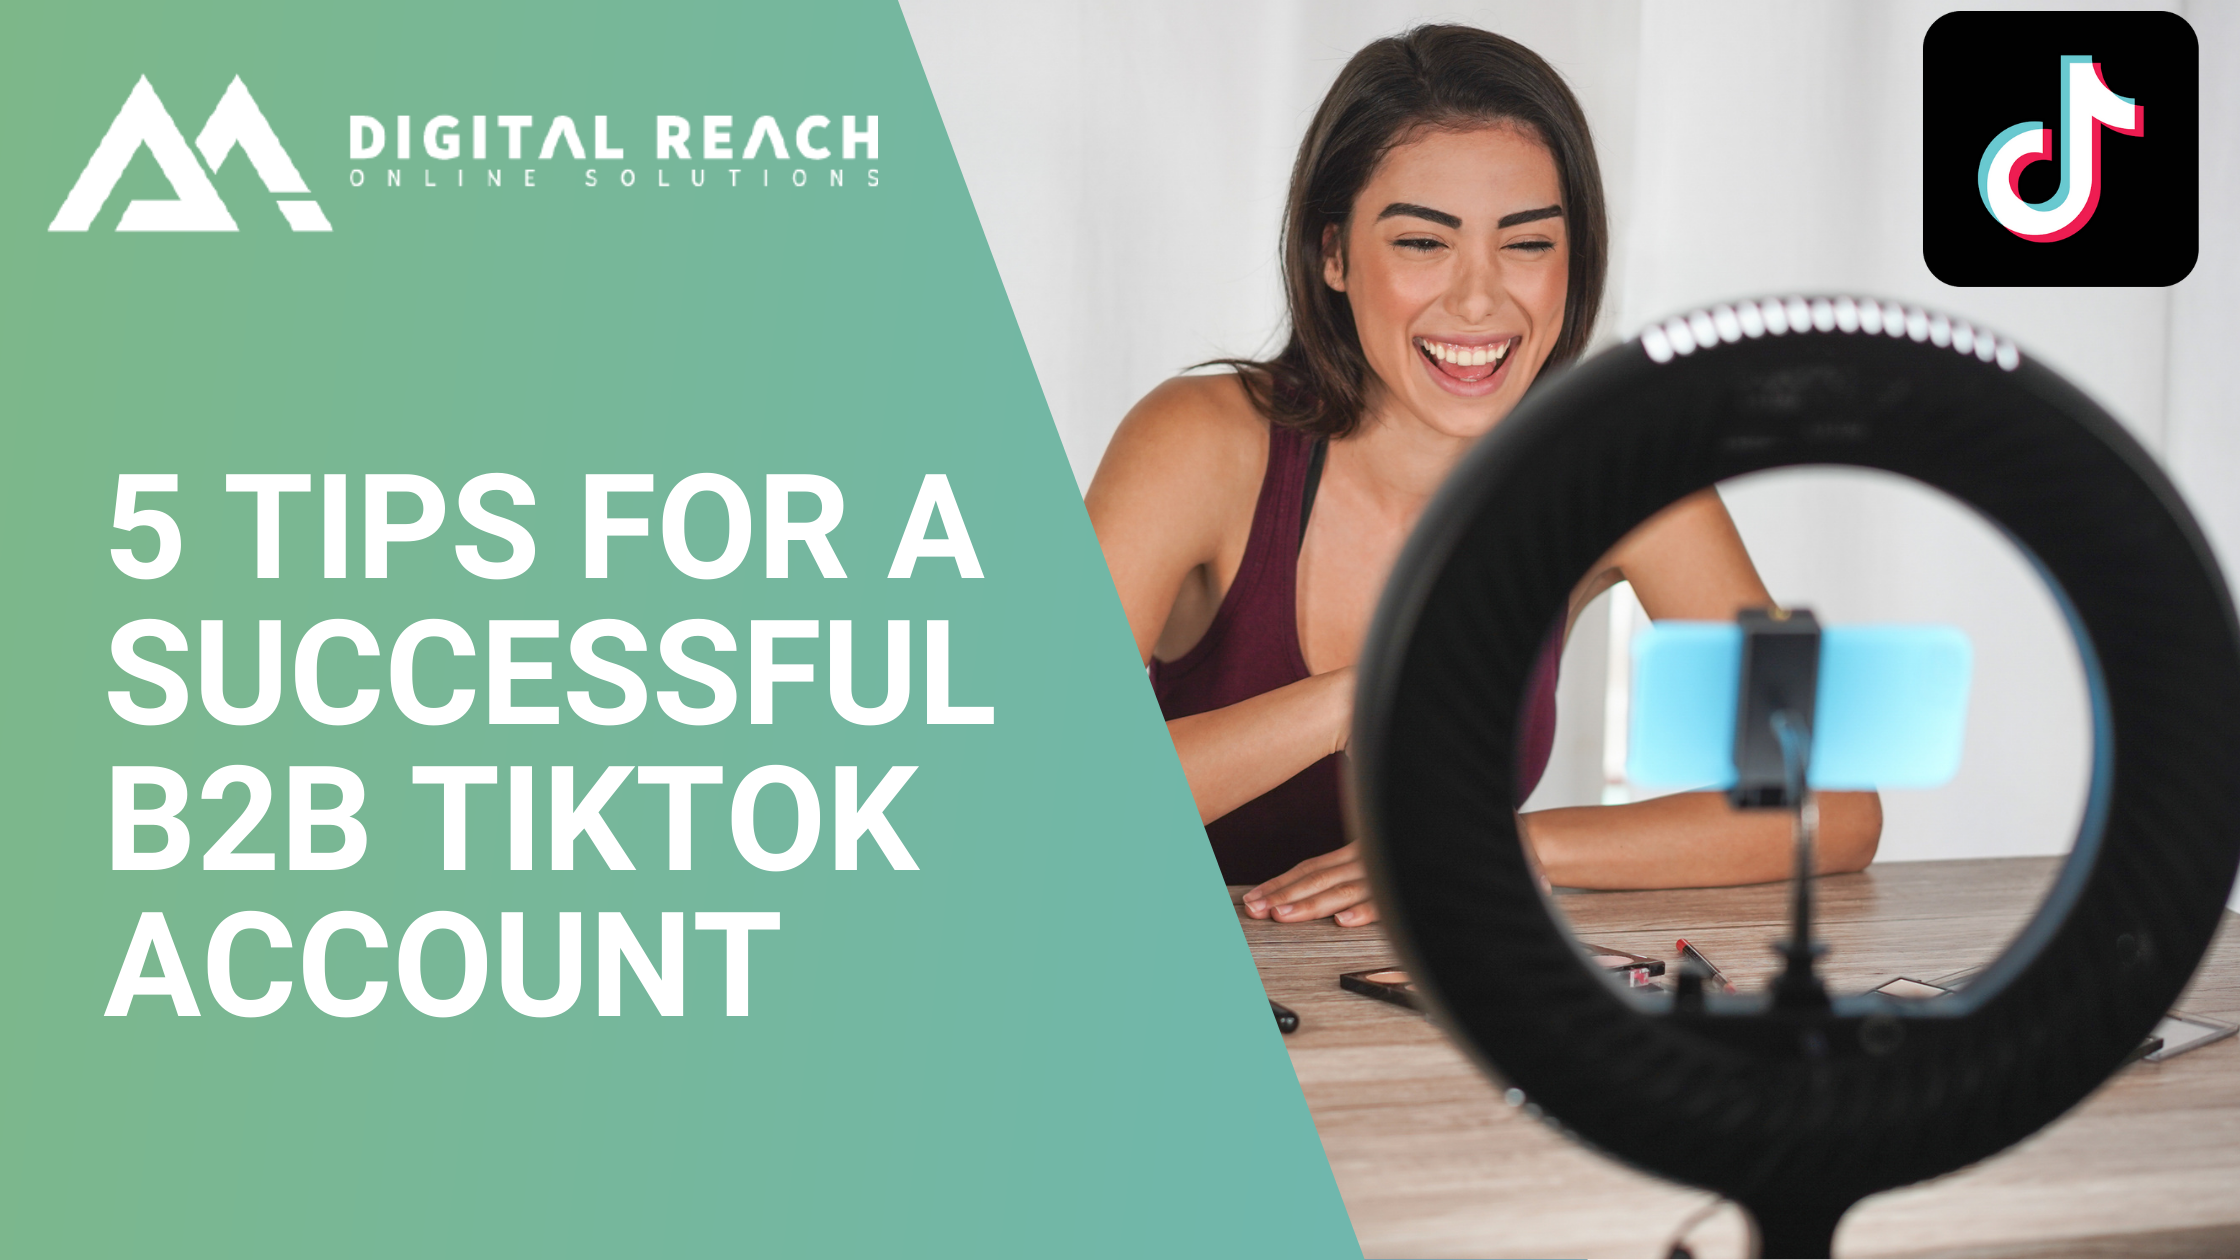 TikTok tips for B2B 